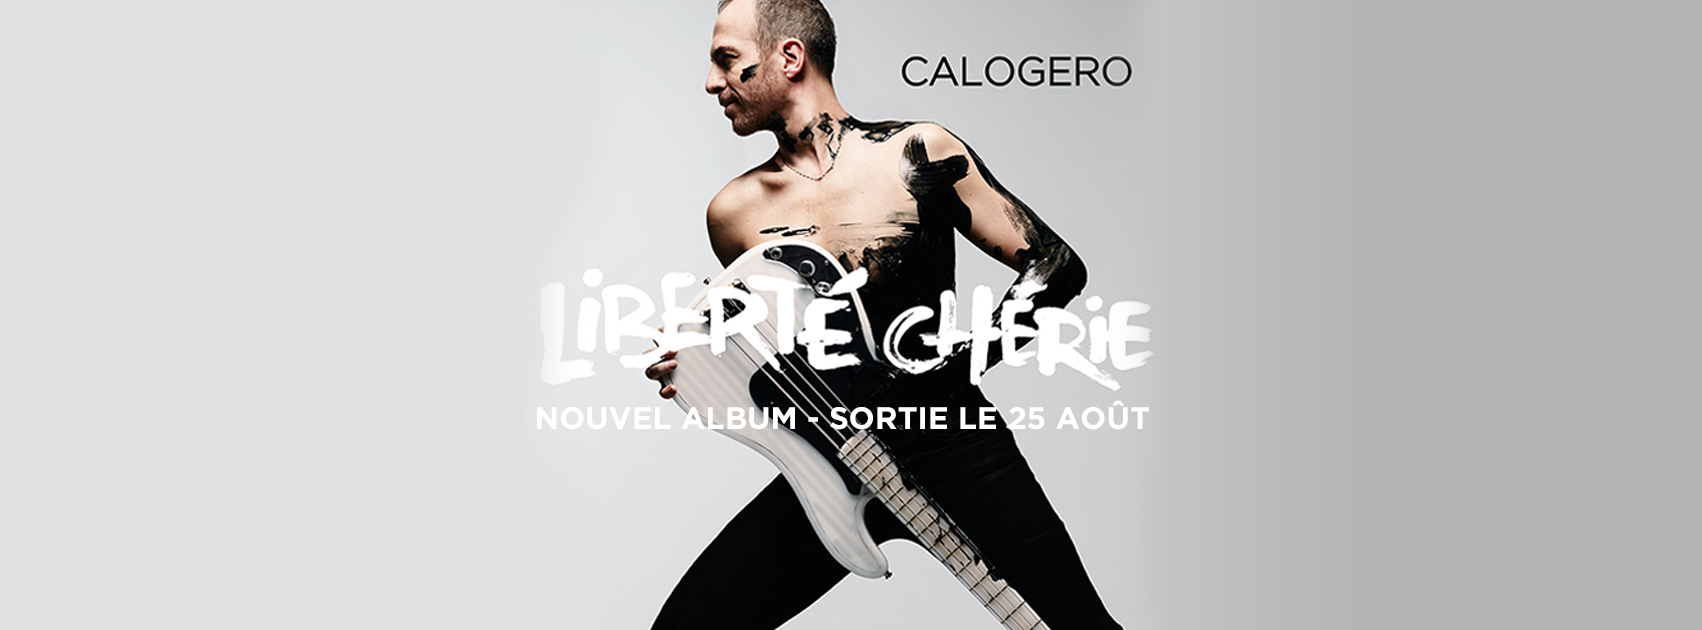 Liberte Cherie Album Calogero